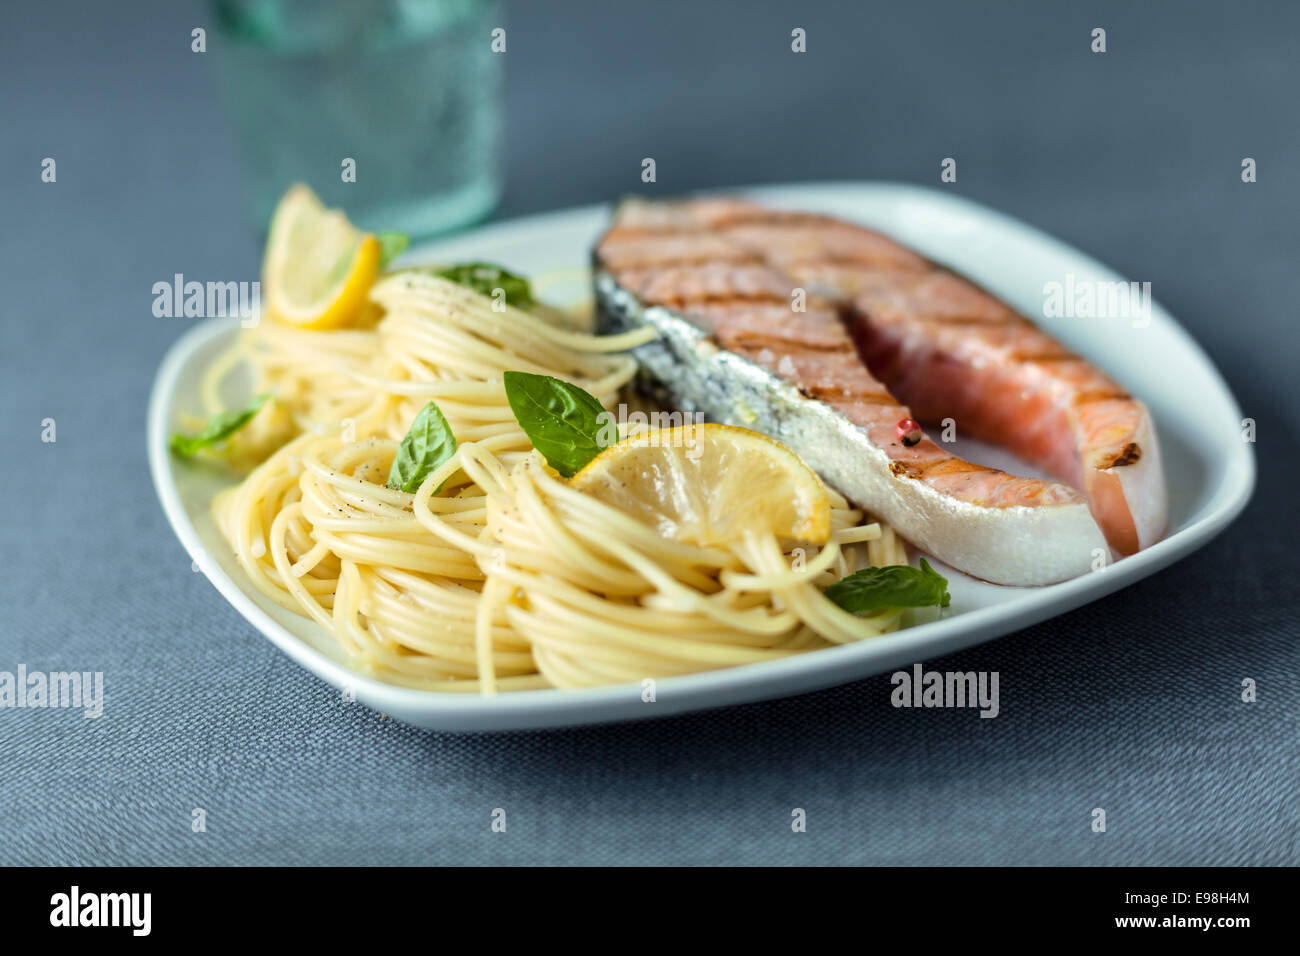 Italian linguine guarnita con foglie di basilico fresco servito con un gourmet alla brace bistecca di salmone per una deliziosa cena a base di pesce Foto Stock